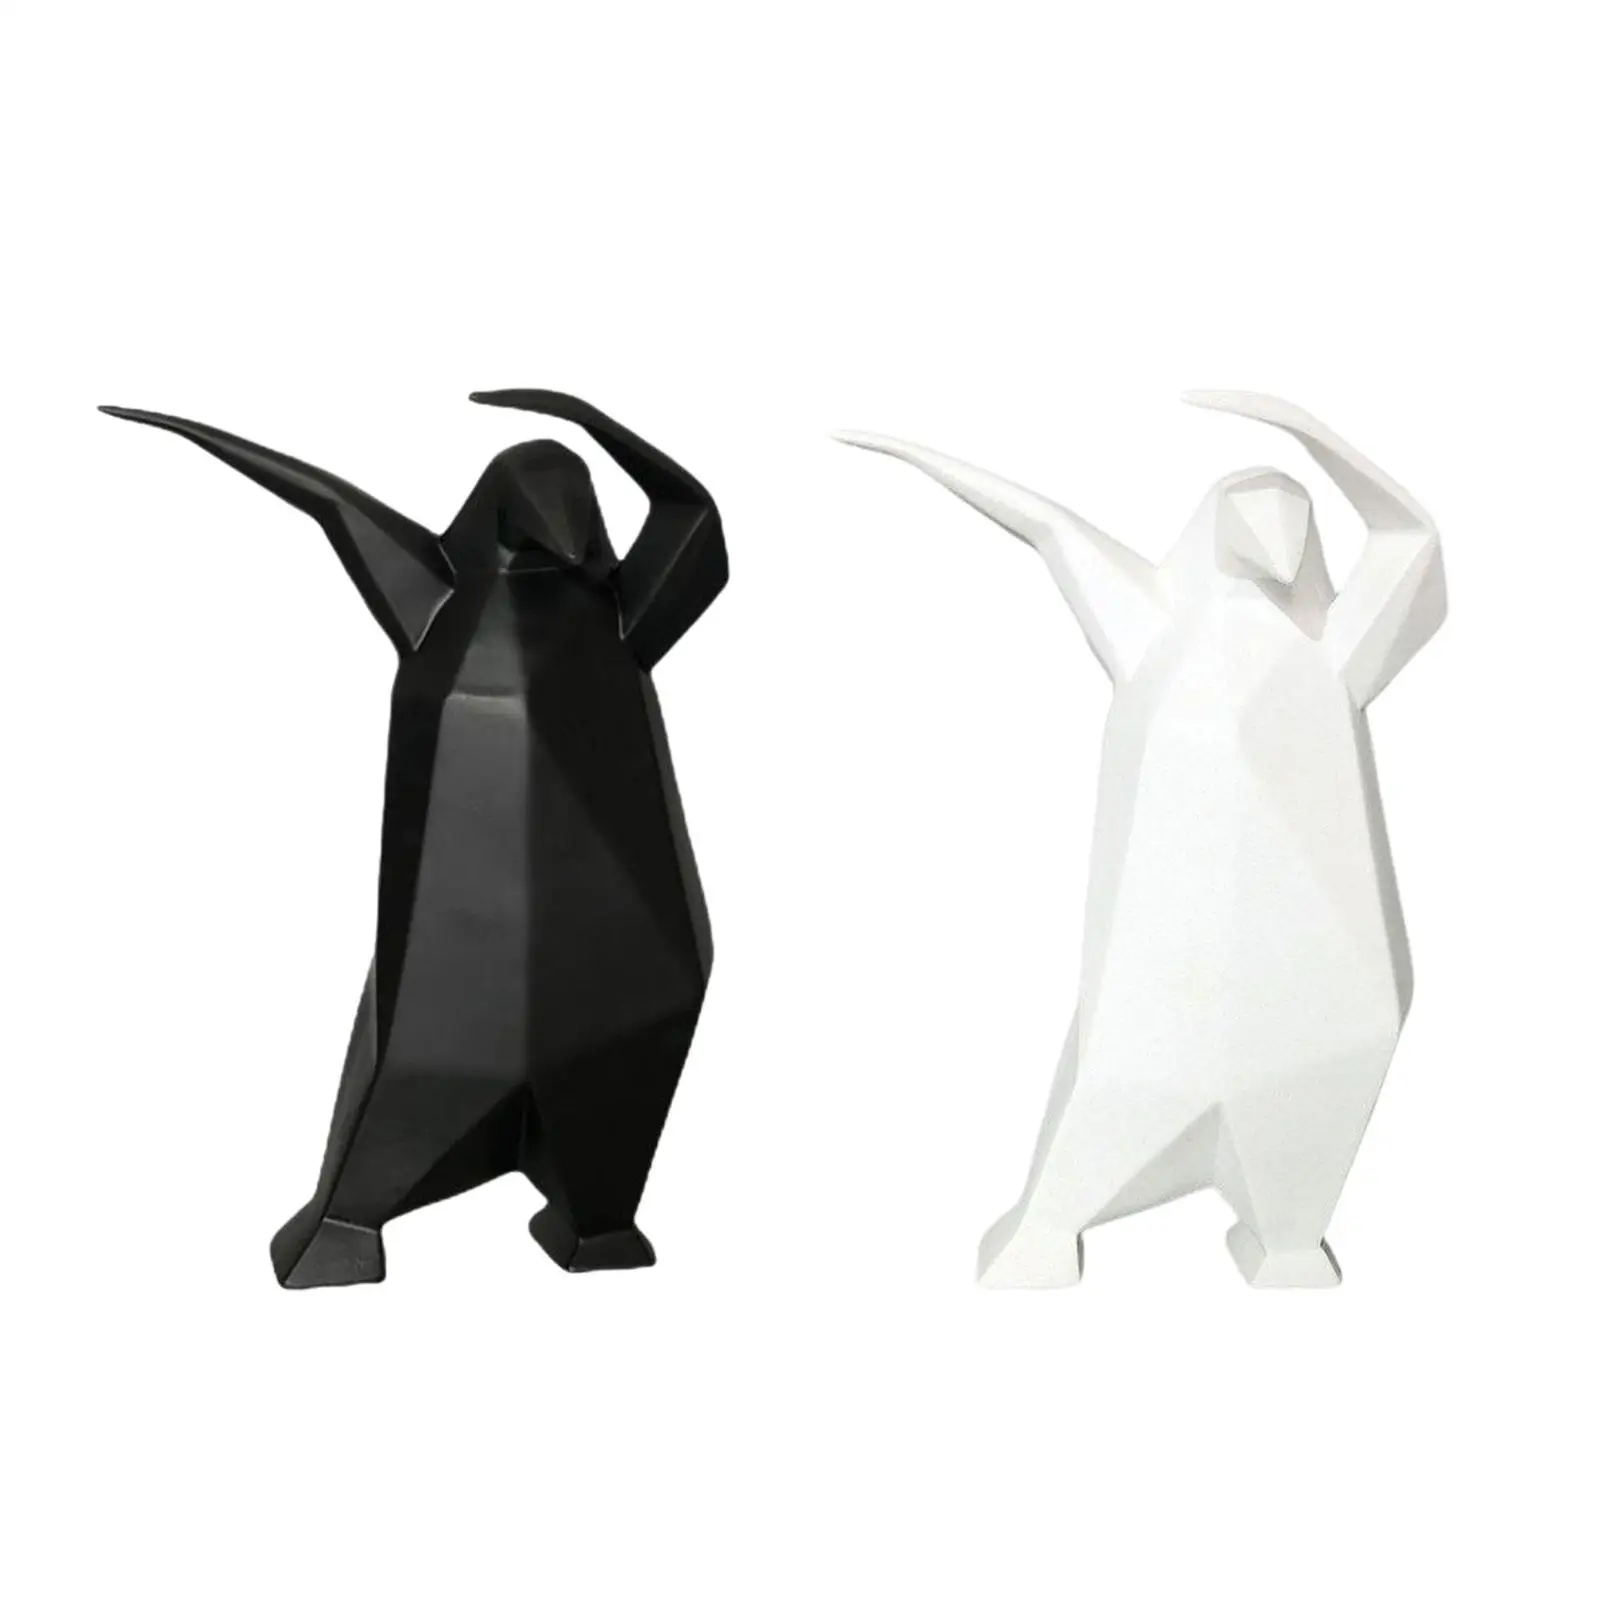 

Статуя пингвина из мультфильма с животными, Минималистичная креативная фигурка животного, Статуэтка из смолы для украшения прихожей